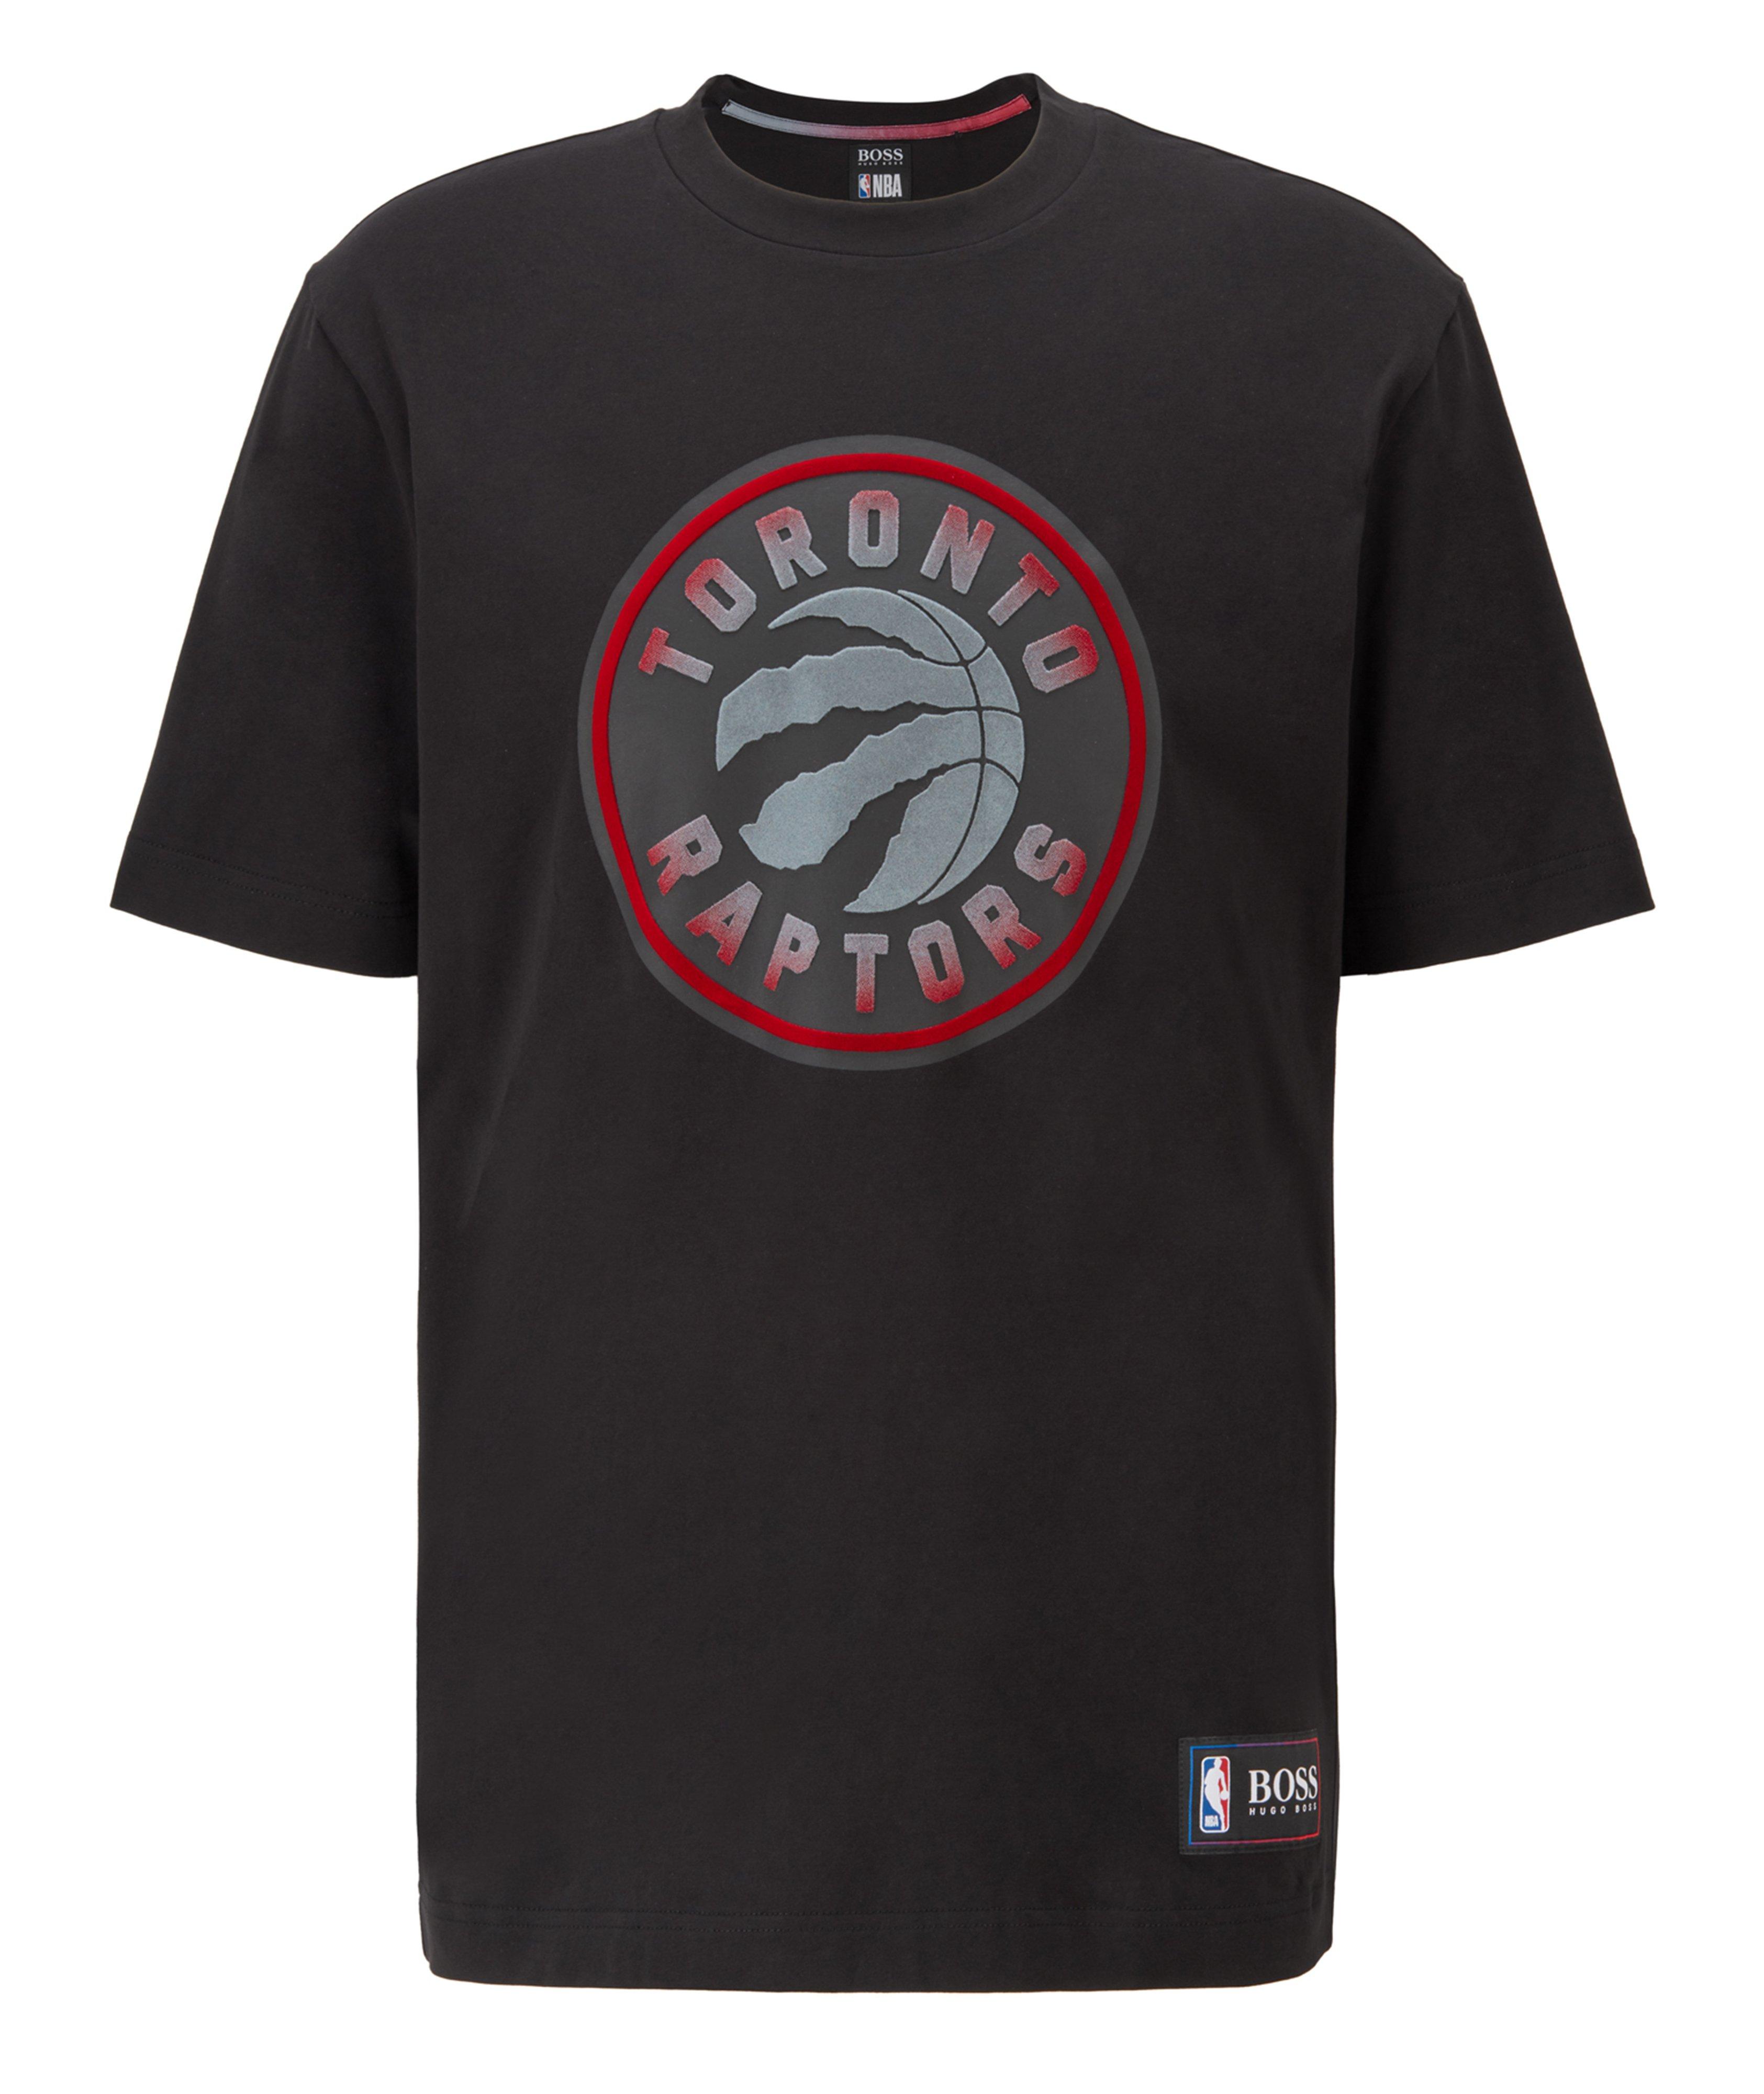 T-shirt imprimé en coton extensible, collection NBA image 0